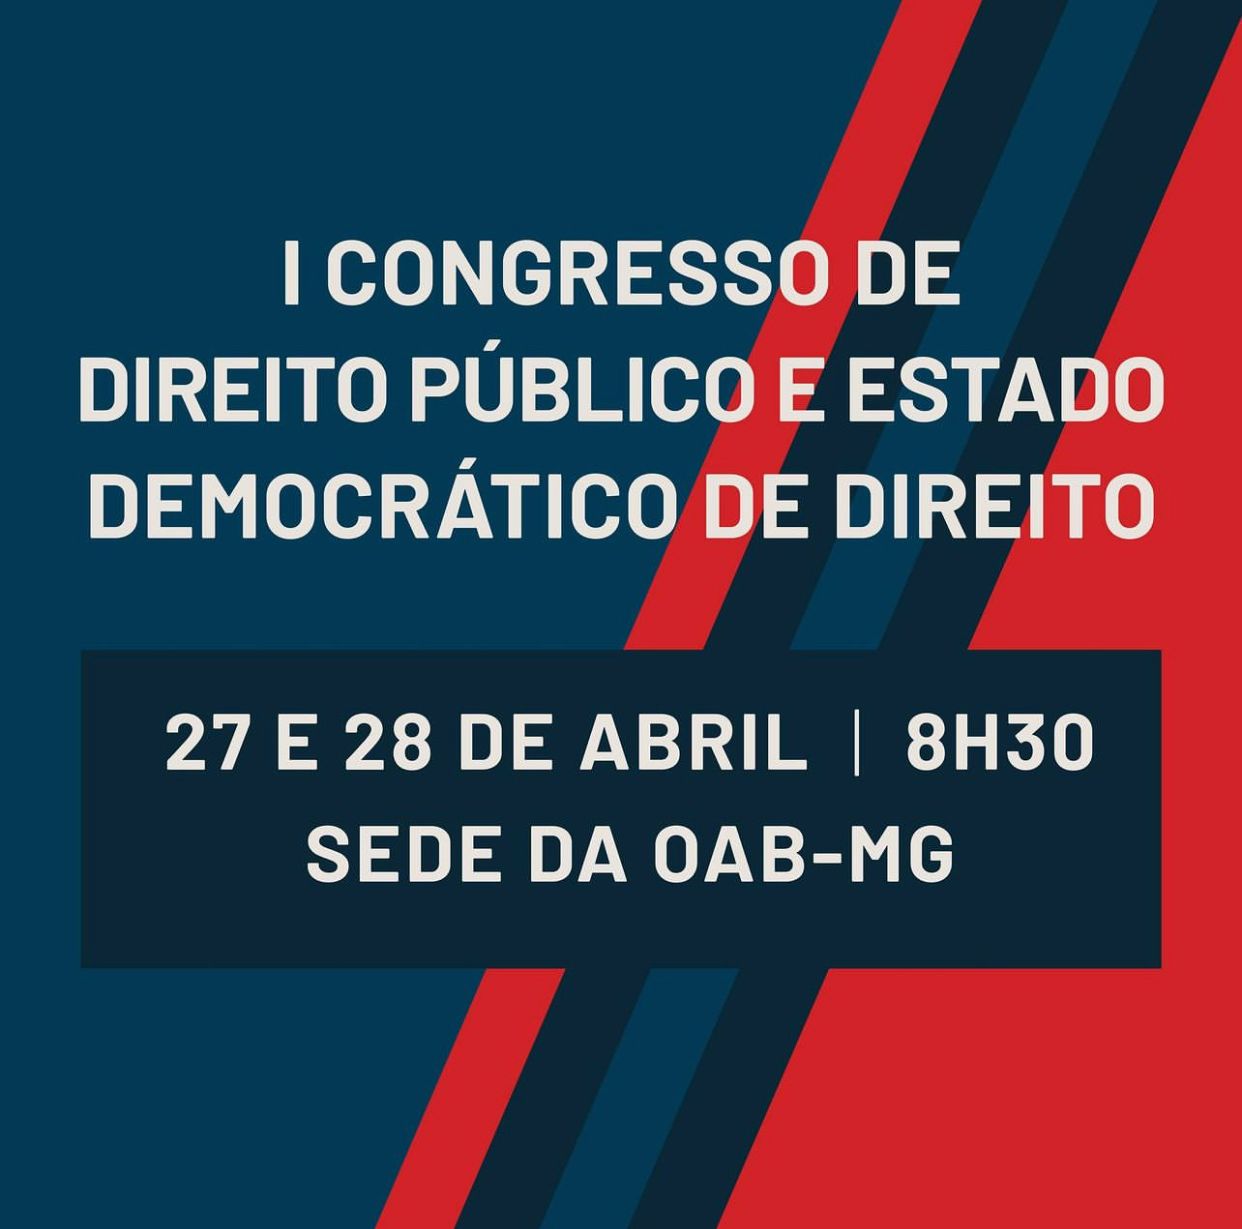  O I Congresso de Direito Público e Estado Democrático de Direito vai acontecer nos dias 27 e 28 de 